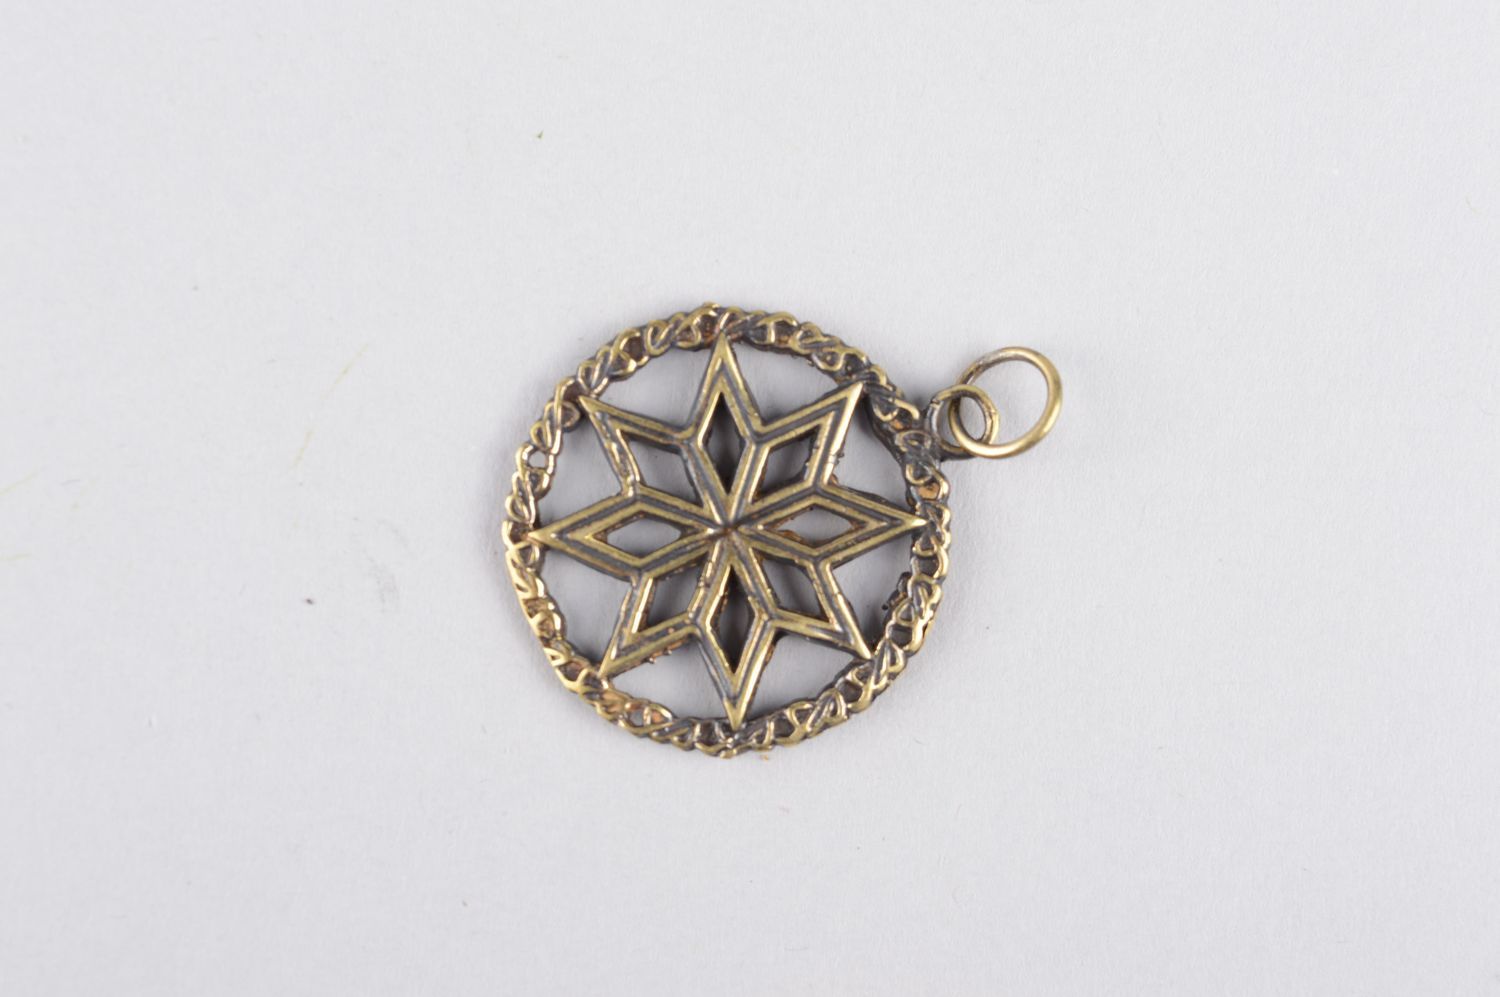 Bronze pendant handmade bronze jewelry metal pendant on cord elegant jewelry photo 2